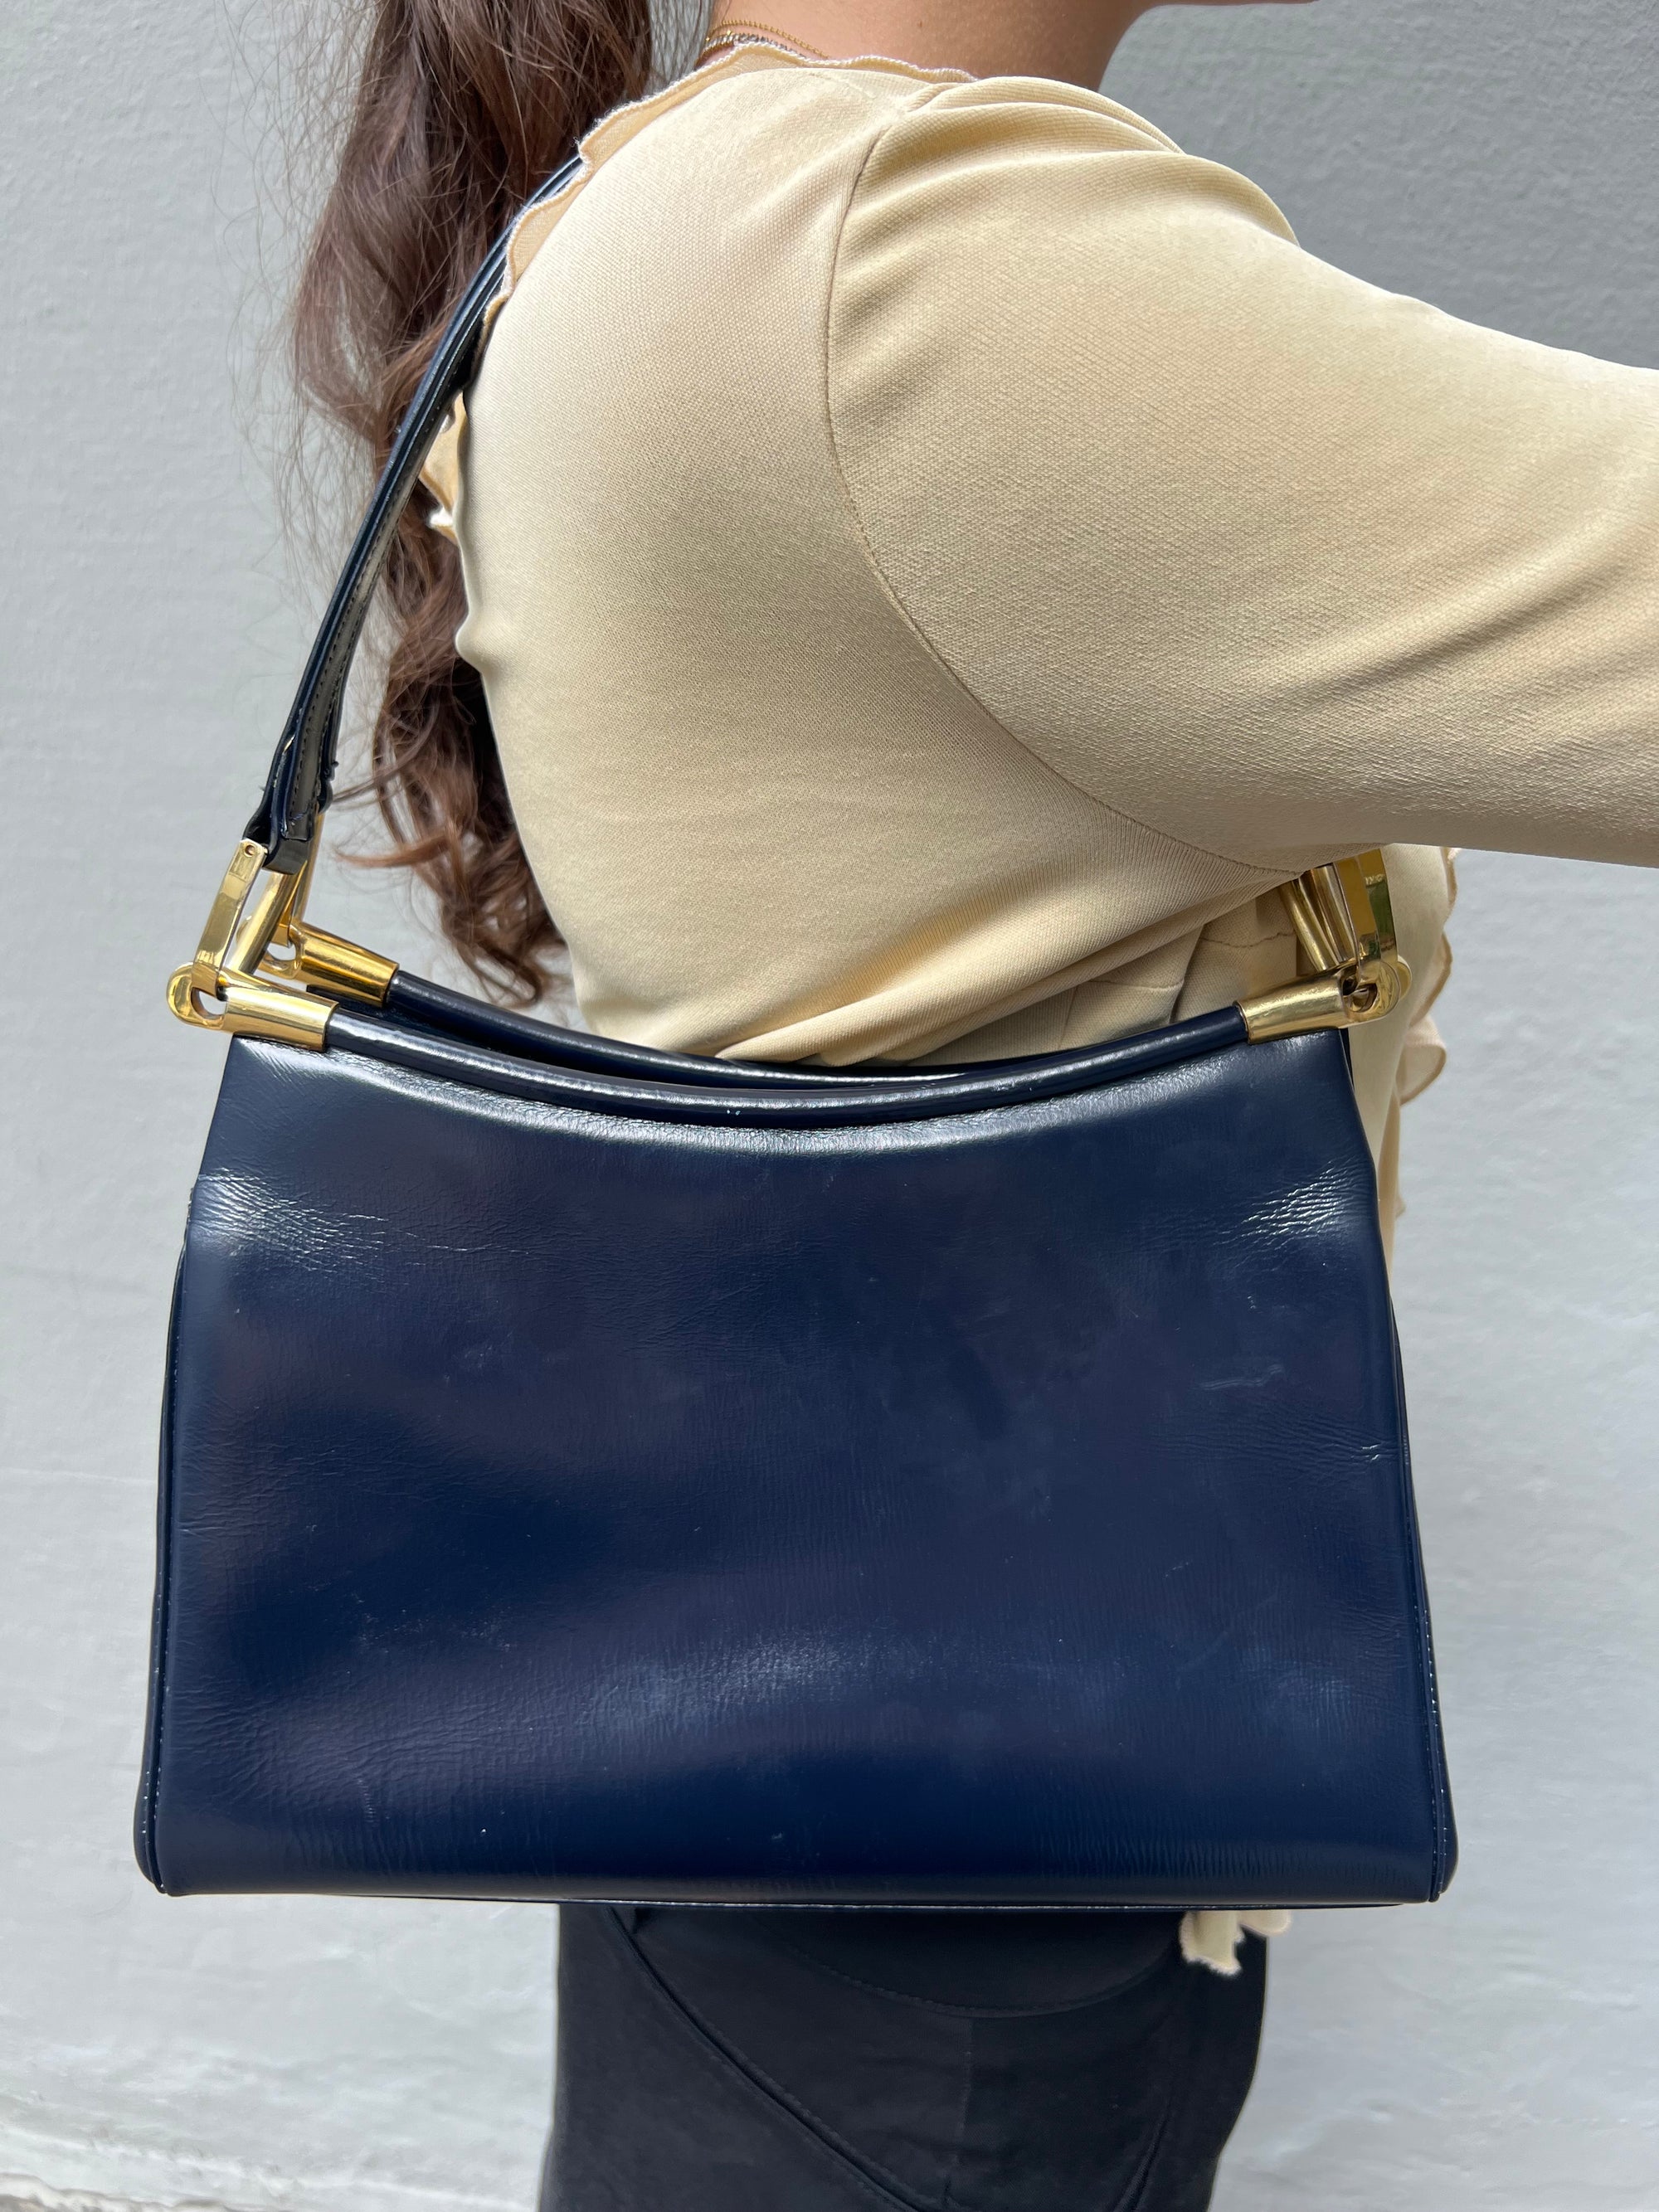 Zu sehen ist eine dunkelblaue Handtasche im Business Look